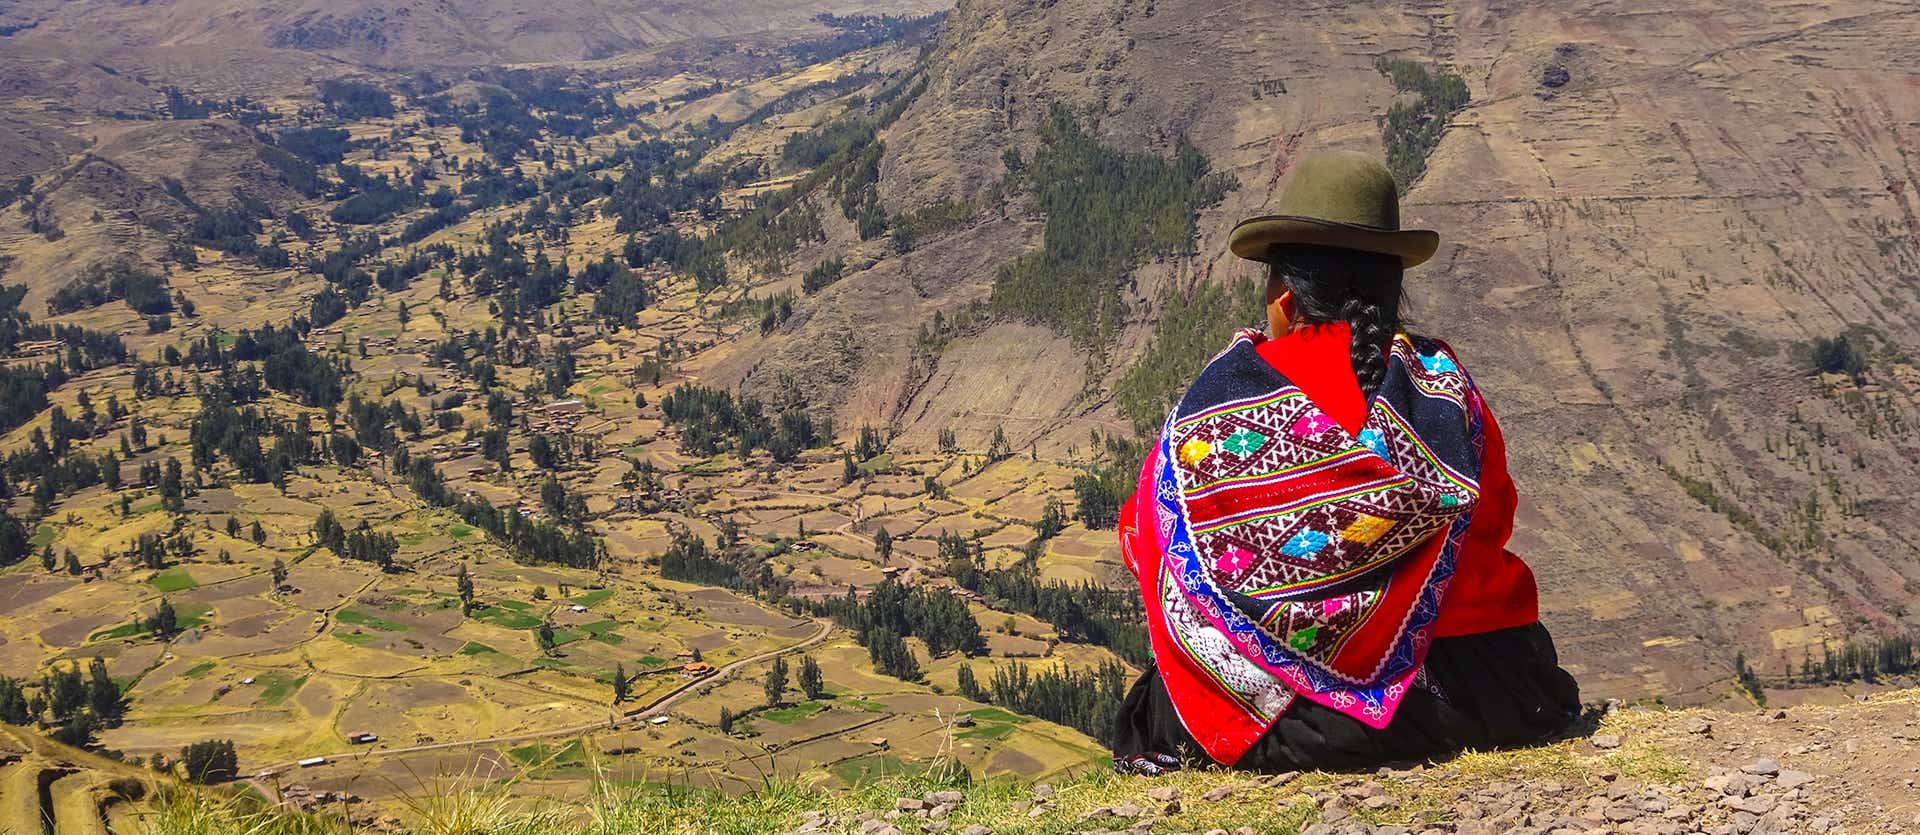 Woman in traditional dress <span class="iconos separador"></span> Cuzco